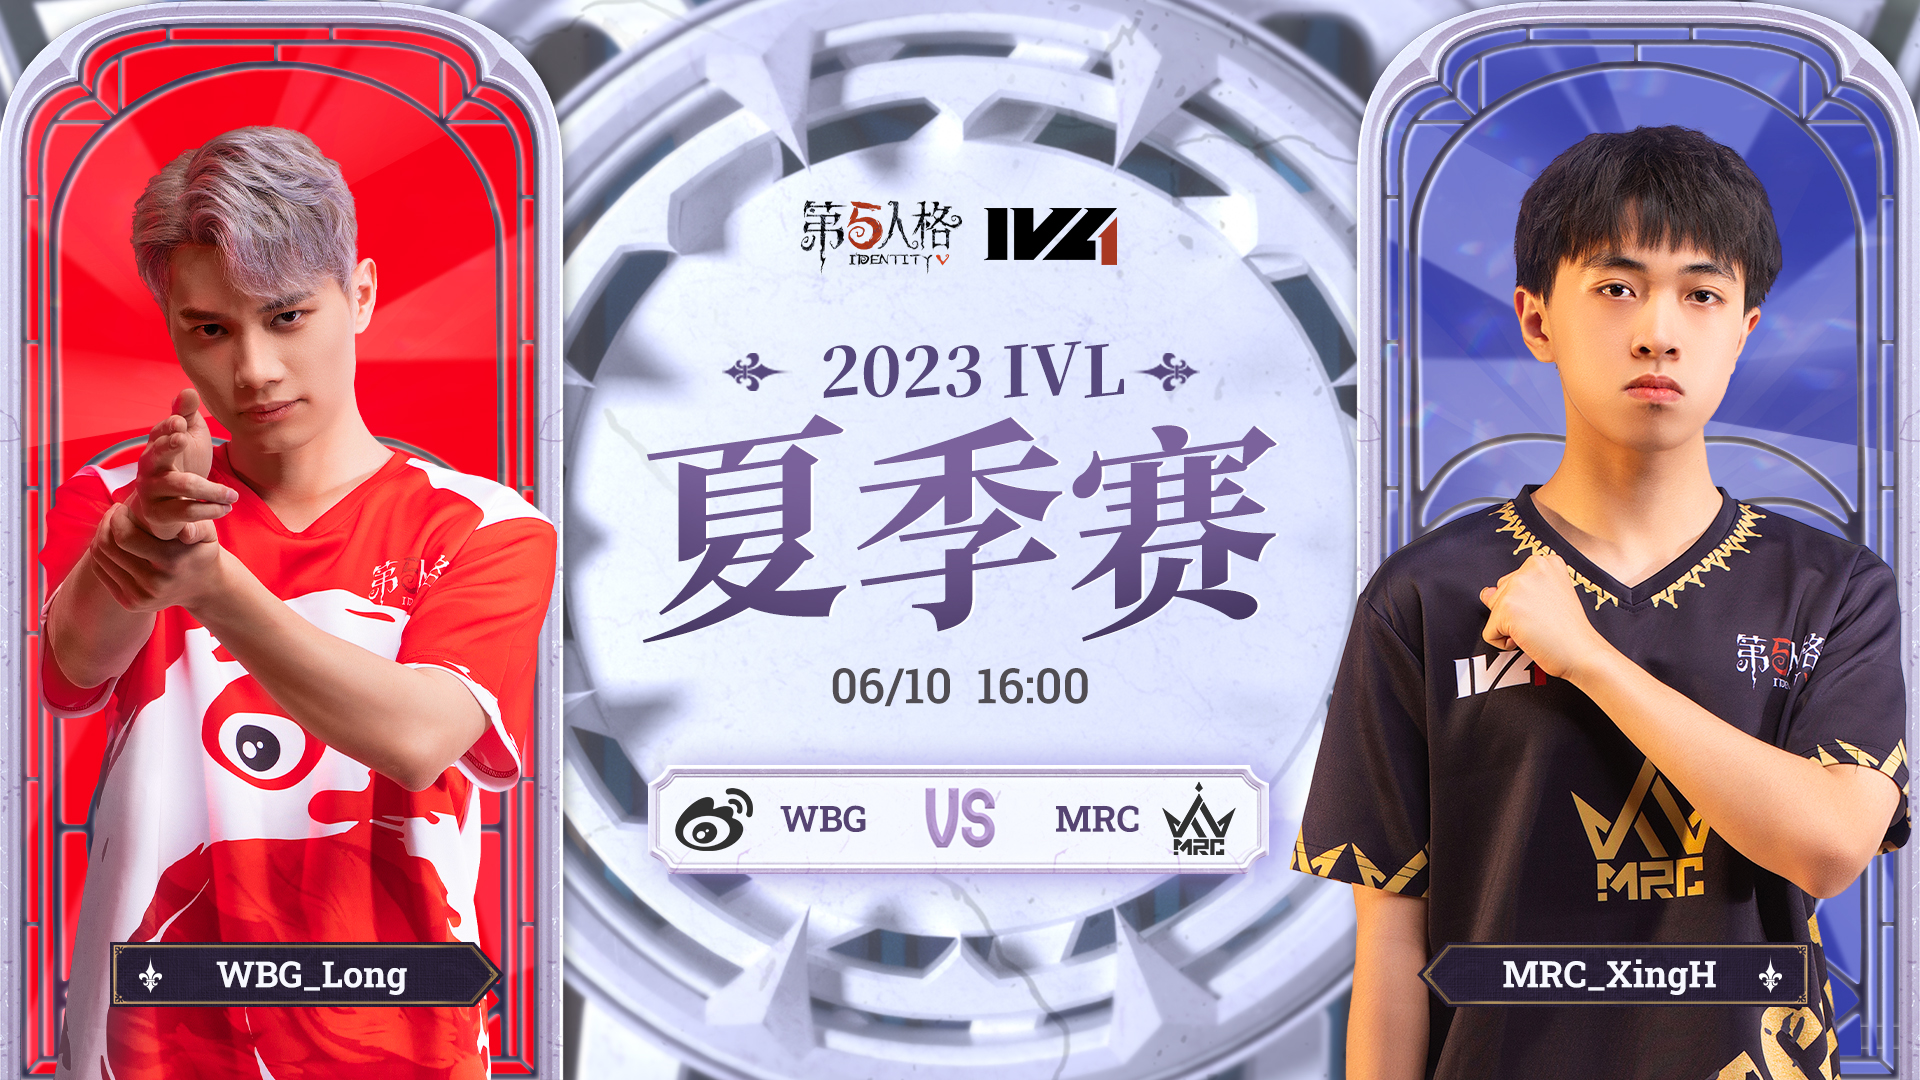 【2023IVL】夏季赛W1D2录像 WBG vs MRC